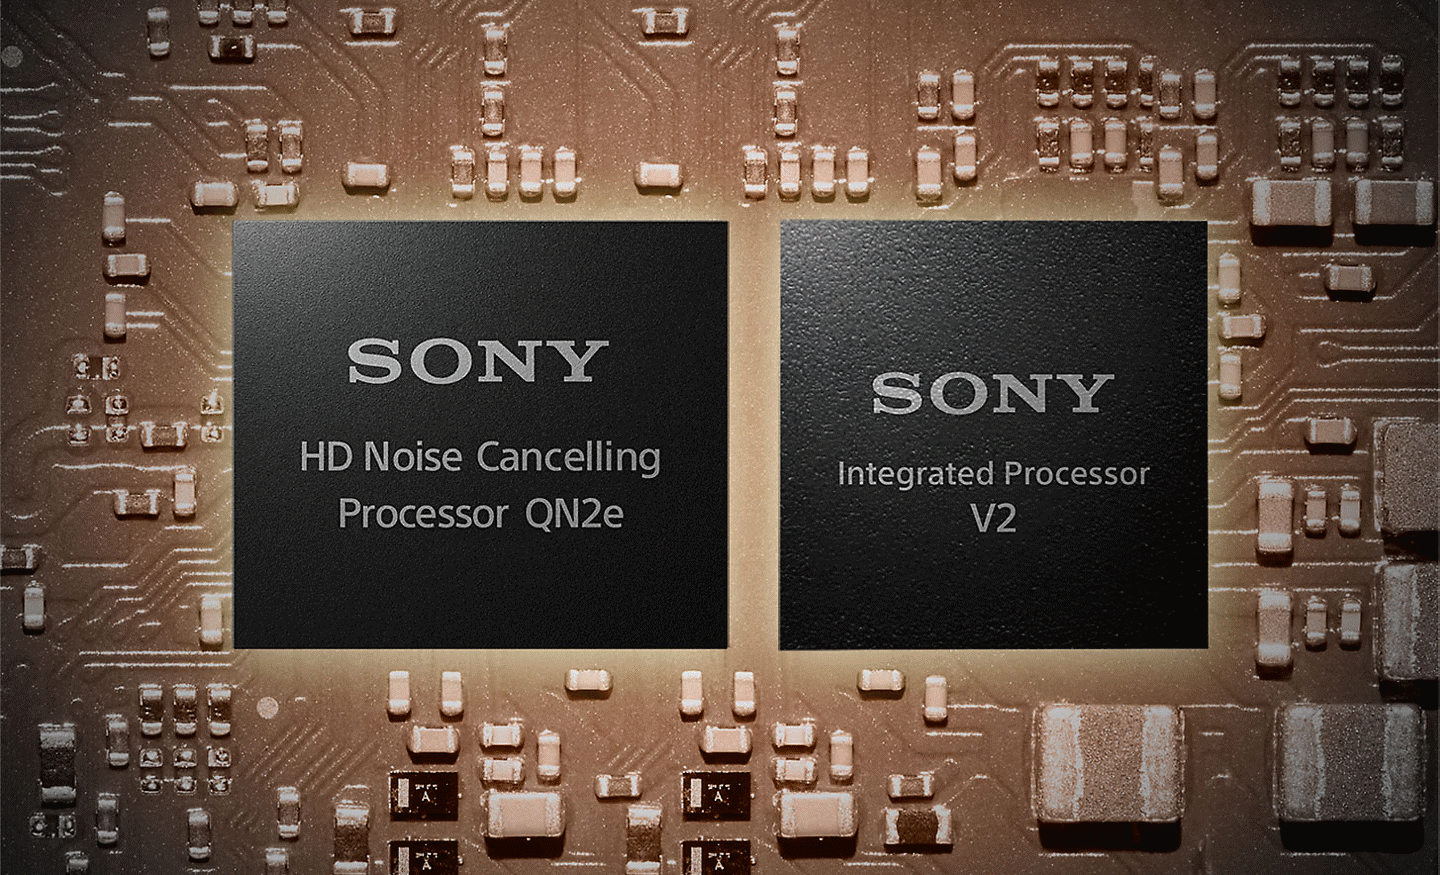 Imagen de dos procesadores en una placa madre; el de la izquierda es el procesador de noise cancelling en HD y el de la derecha el procesador integrado V2